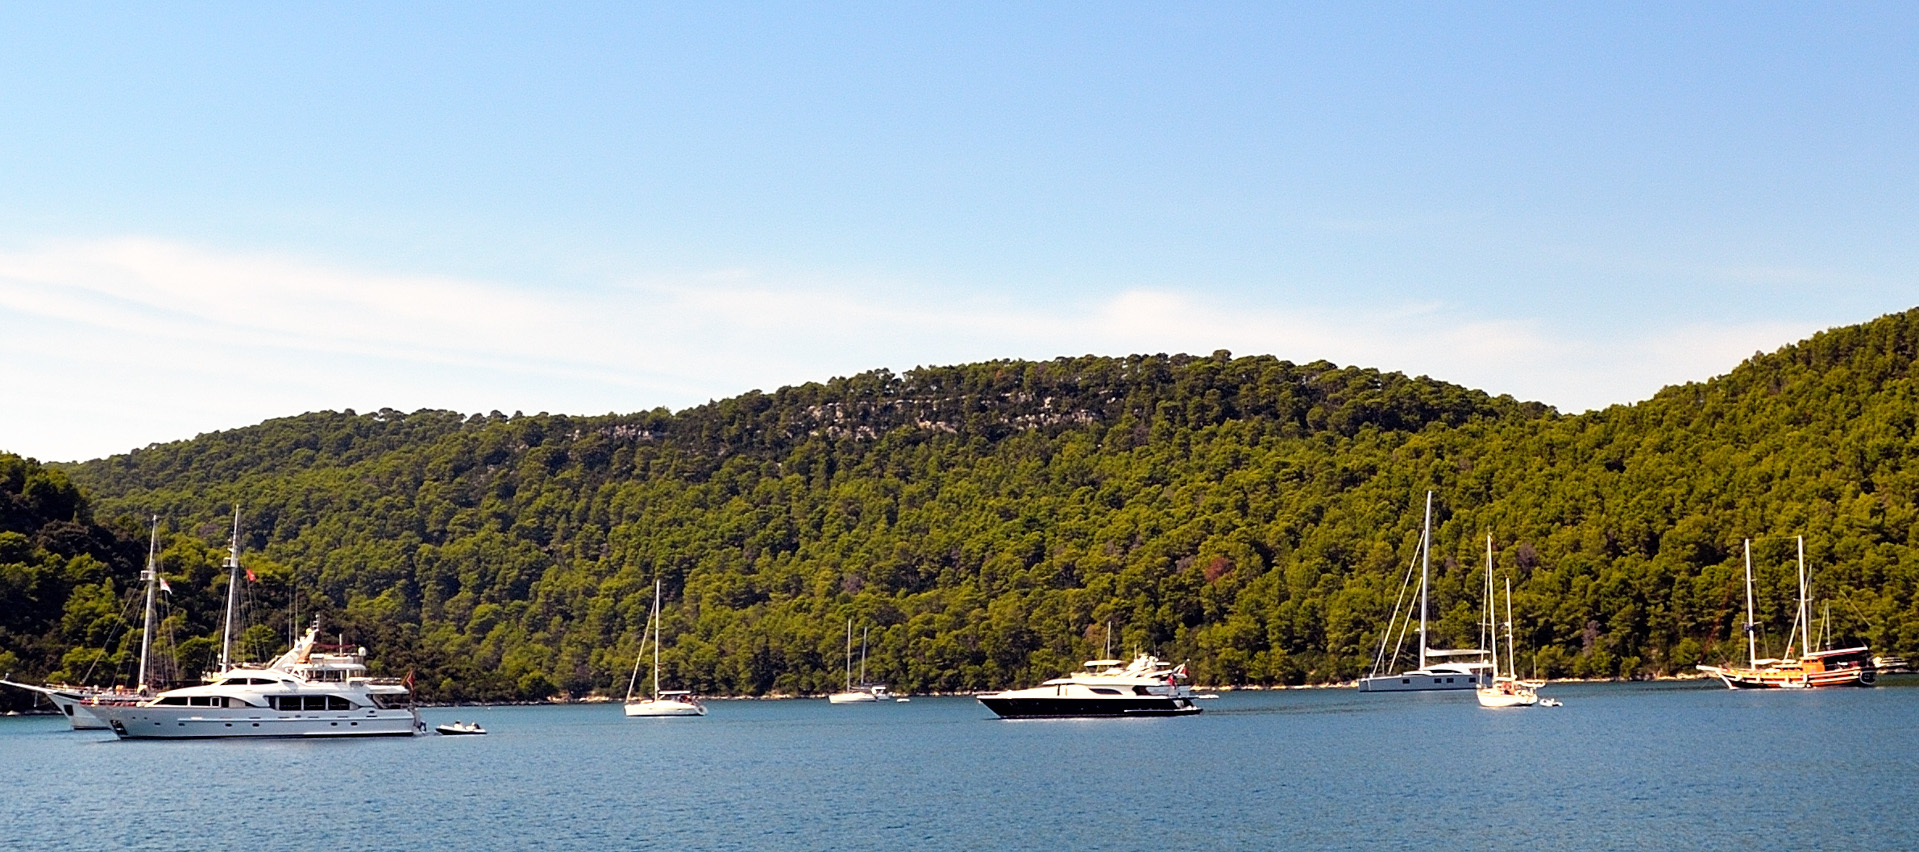 Polace und seine geschützte Bucht wird auch gerne von vielen Skipper als Tagesziel genutzt...